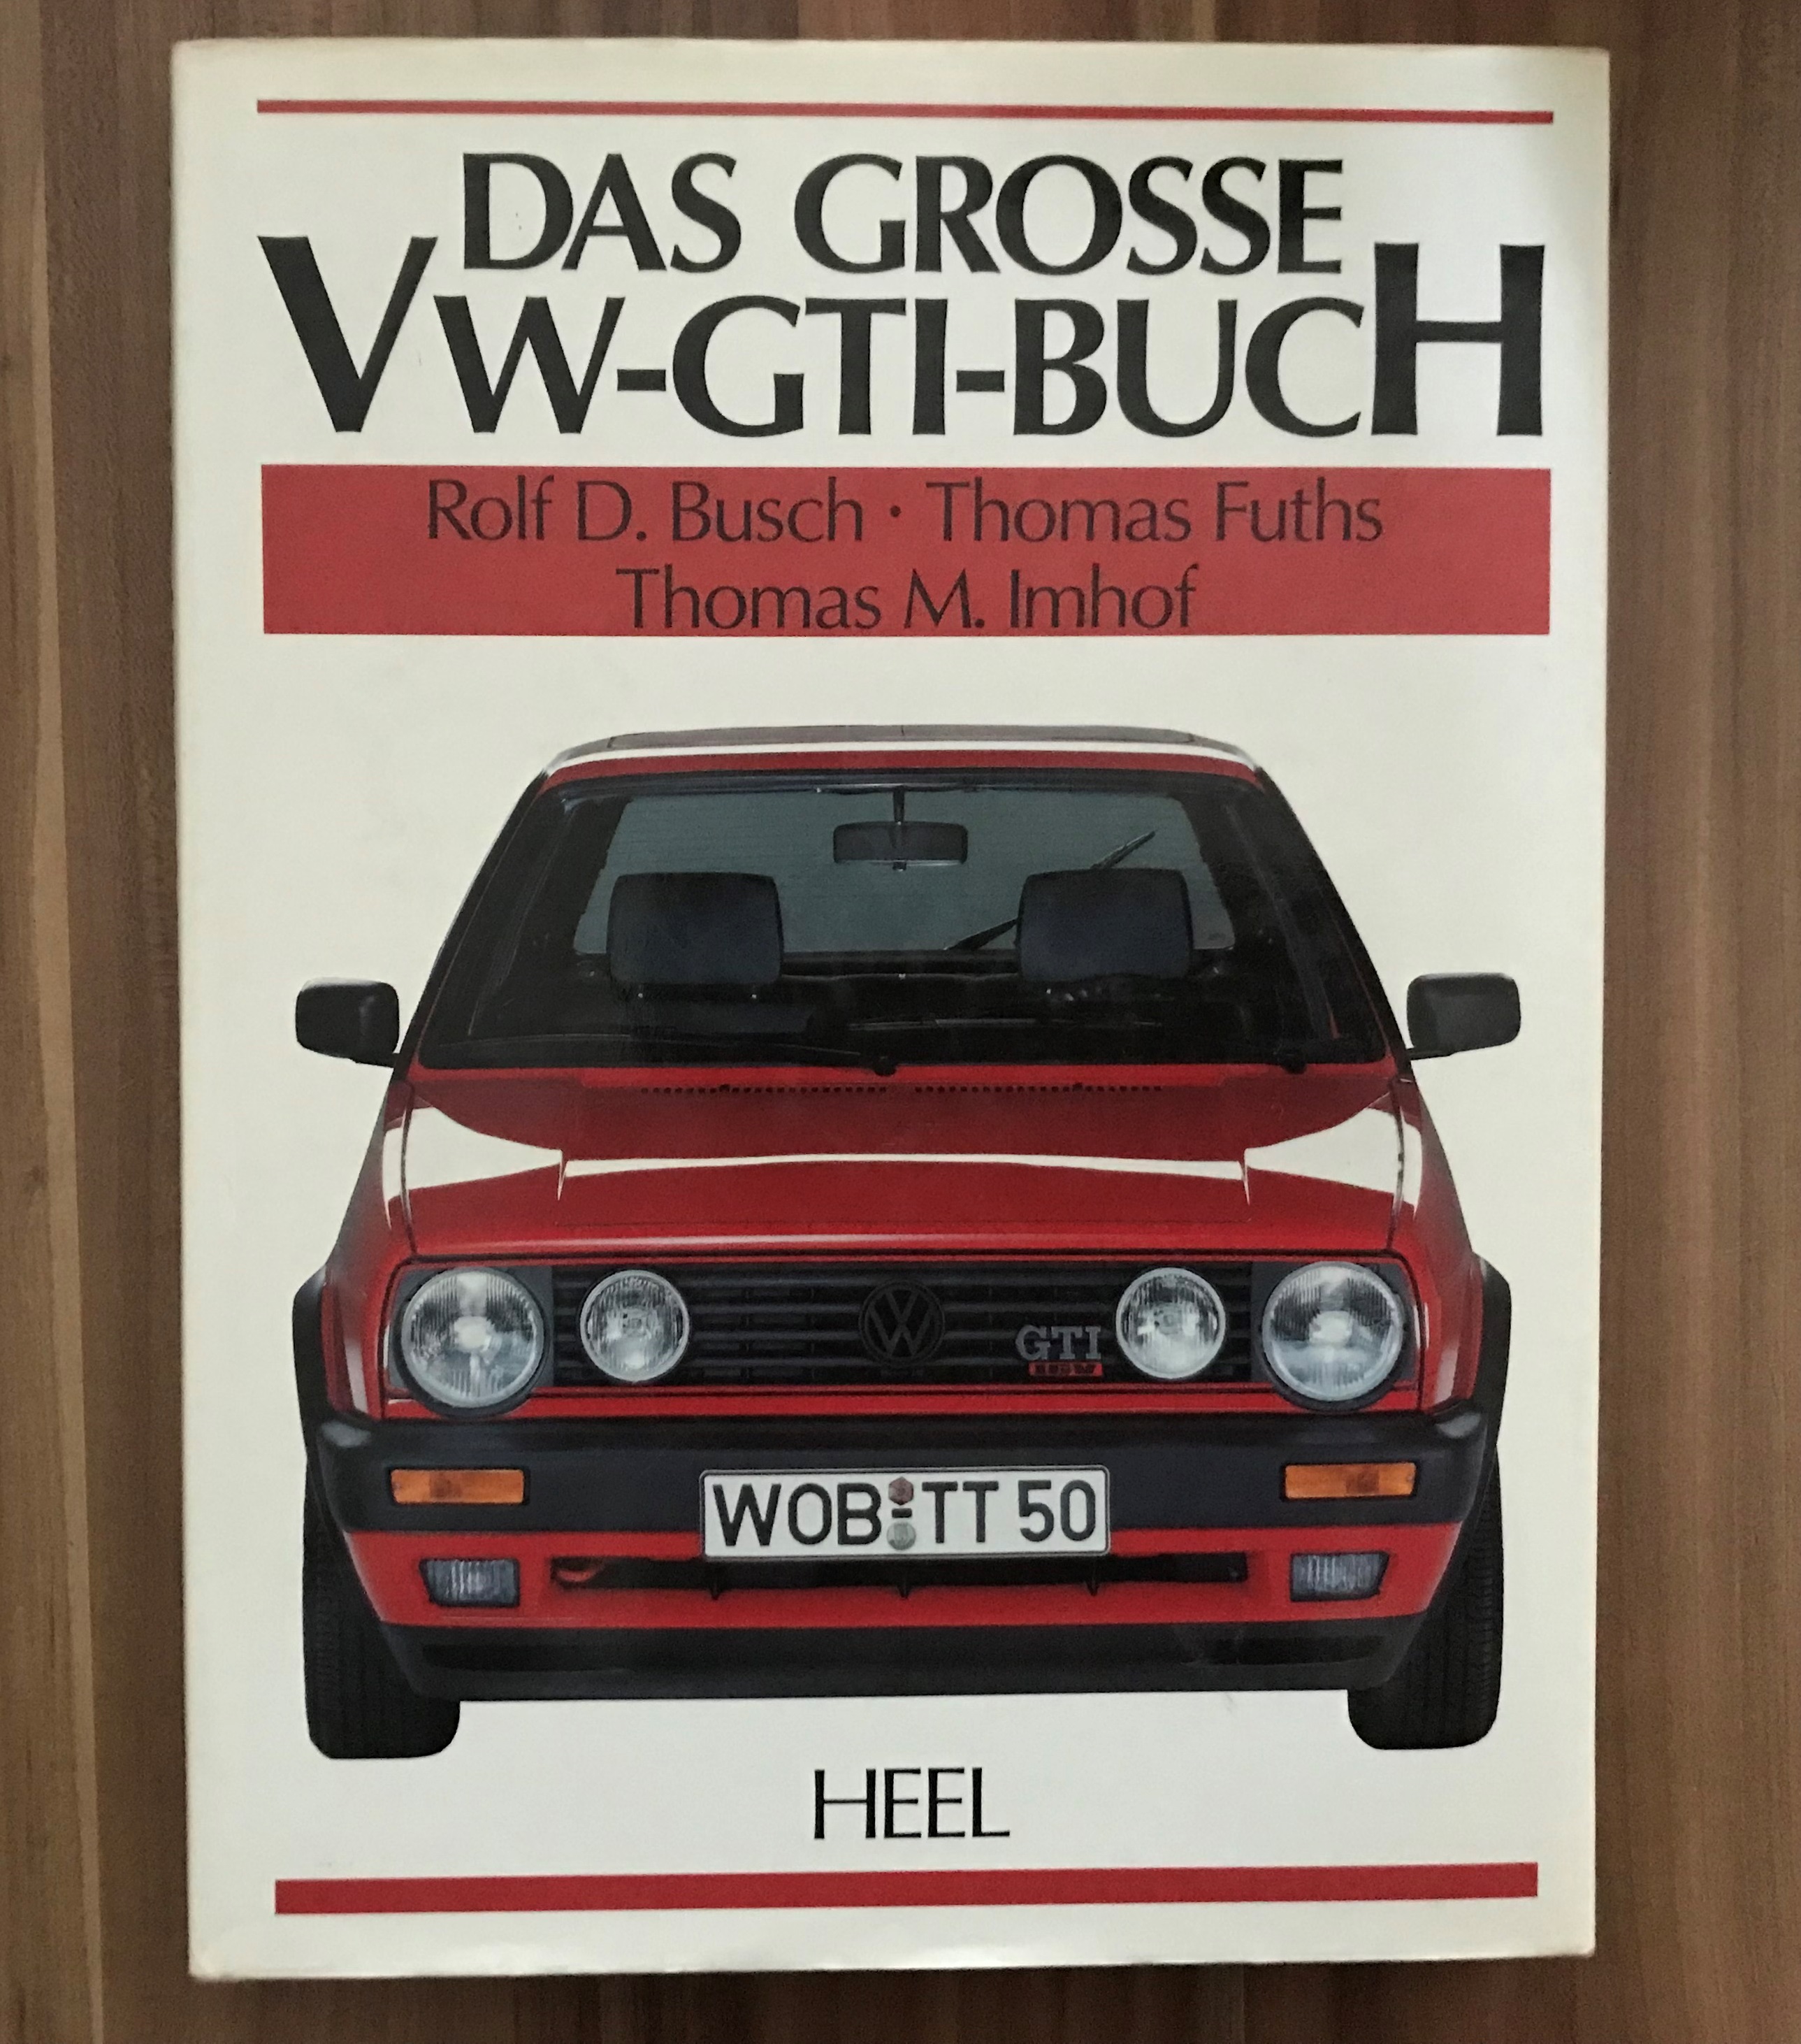 Das grosse VW-GTI-Buch. - Busch, Rolf D. Verfasser], Thomas Fuths  und Thomas M. Imhof